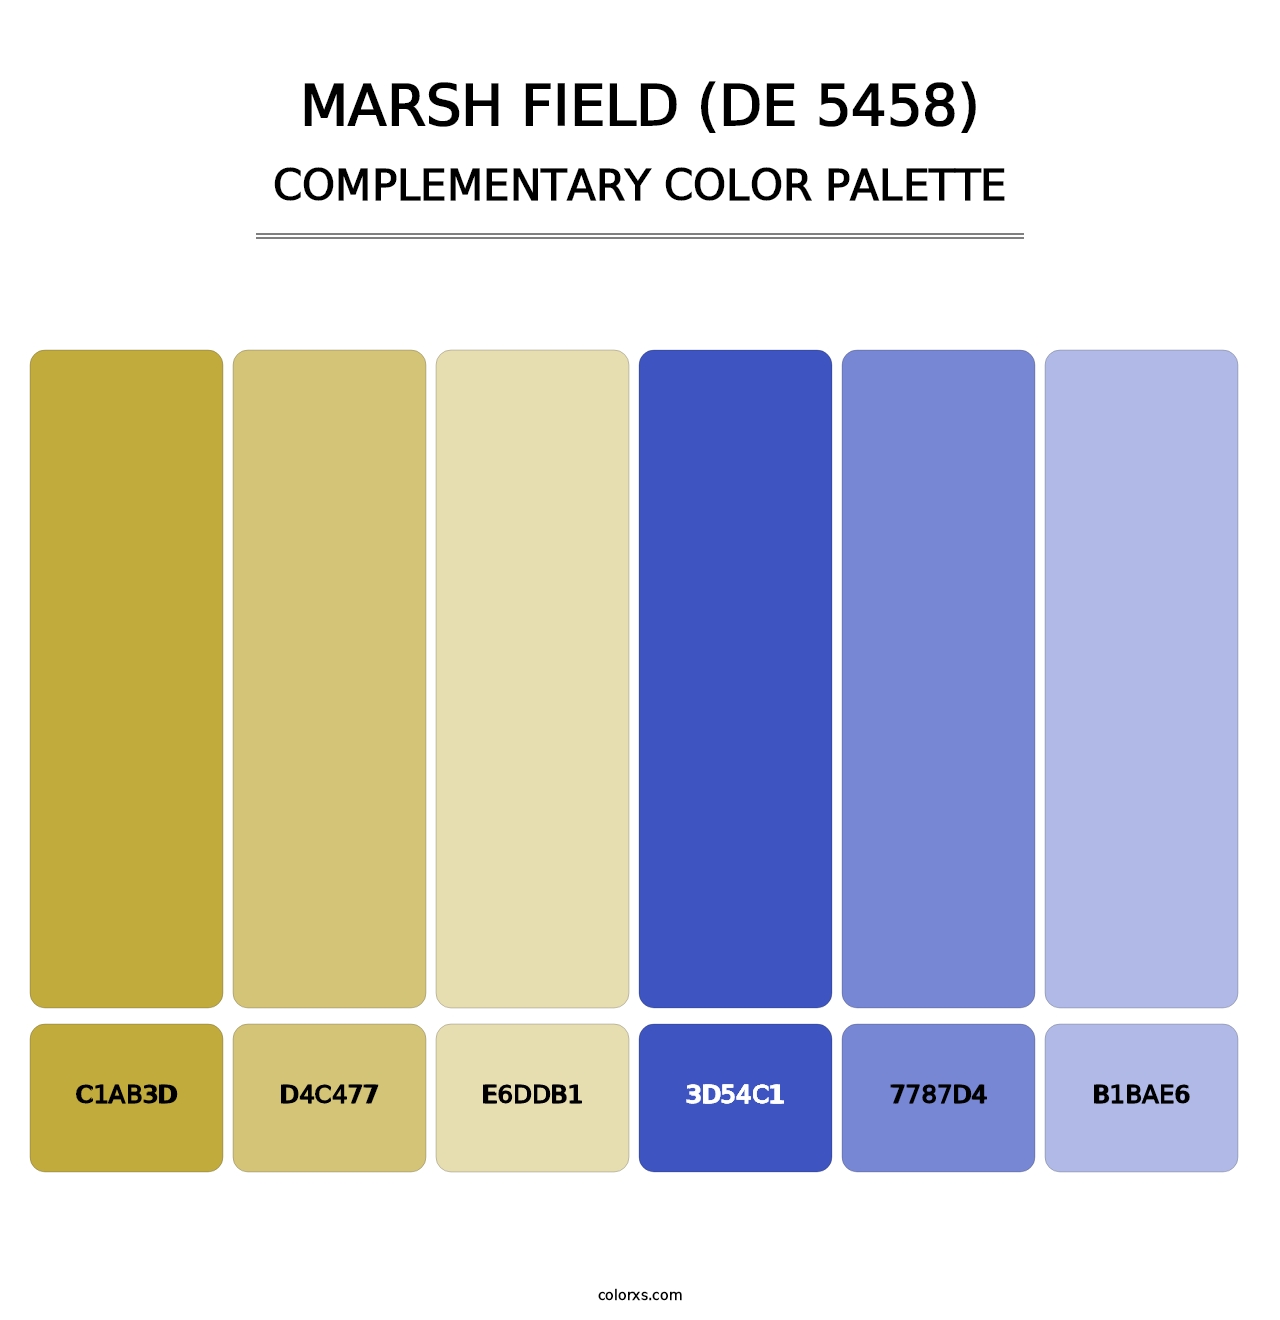 Marsh Field (DE 5458) - Complementary Color Palette